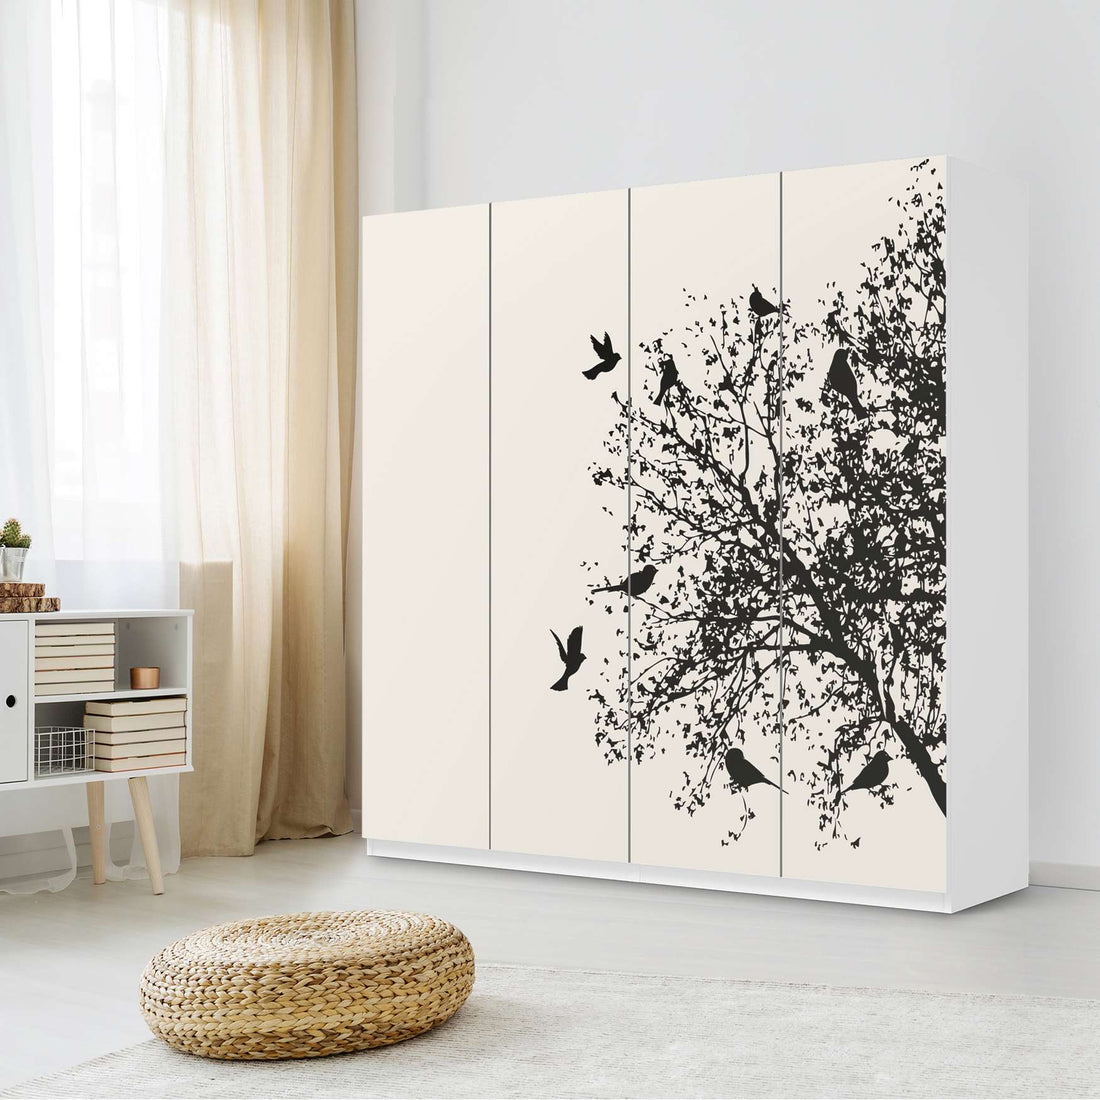 Klebefolie für Schränke Tree and Birds 2 - IKEA Pax Schrank 201 cm Höhe - 4 Türen - Schlafzimmer